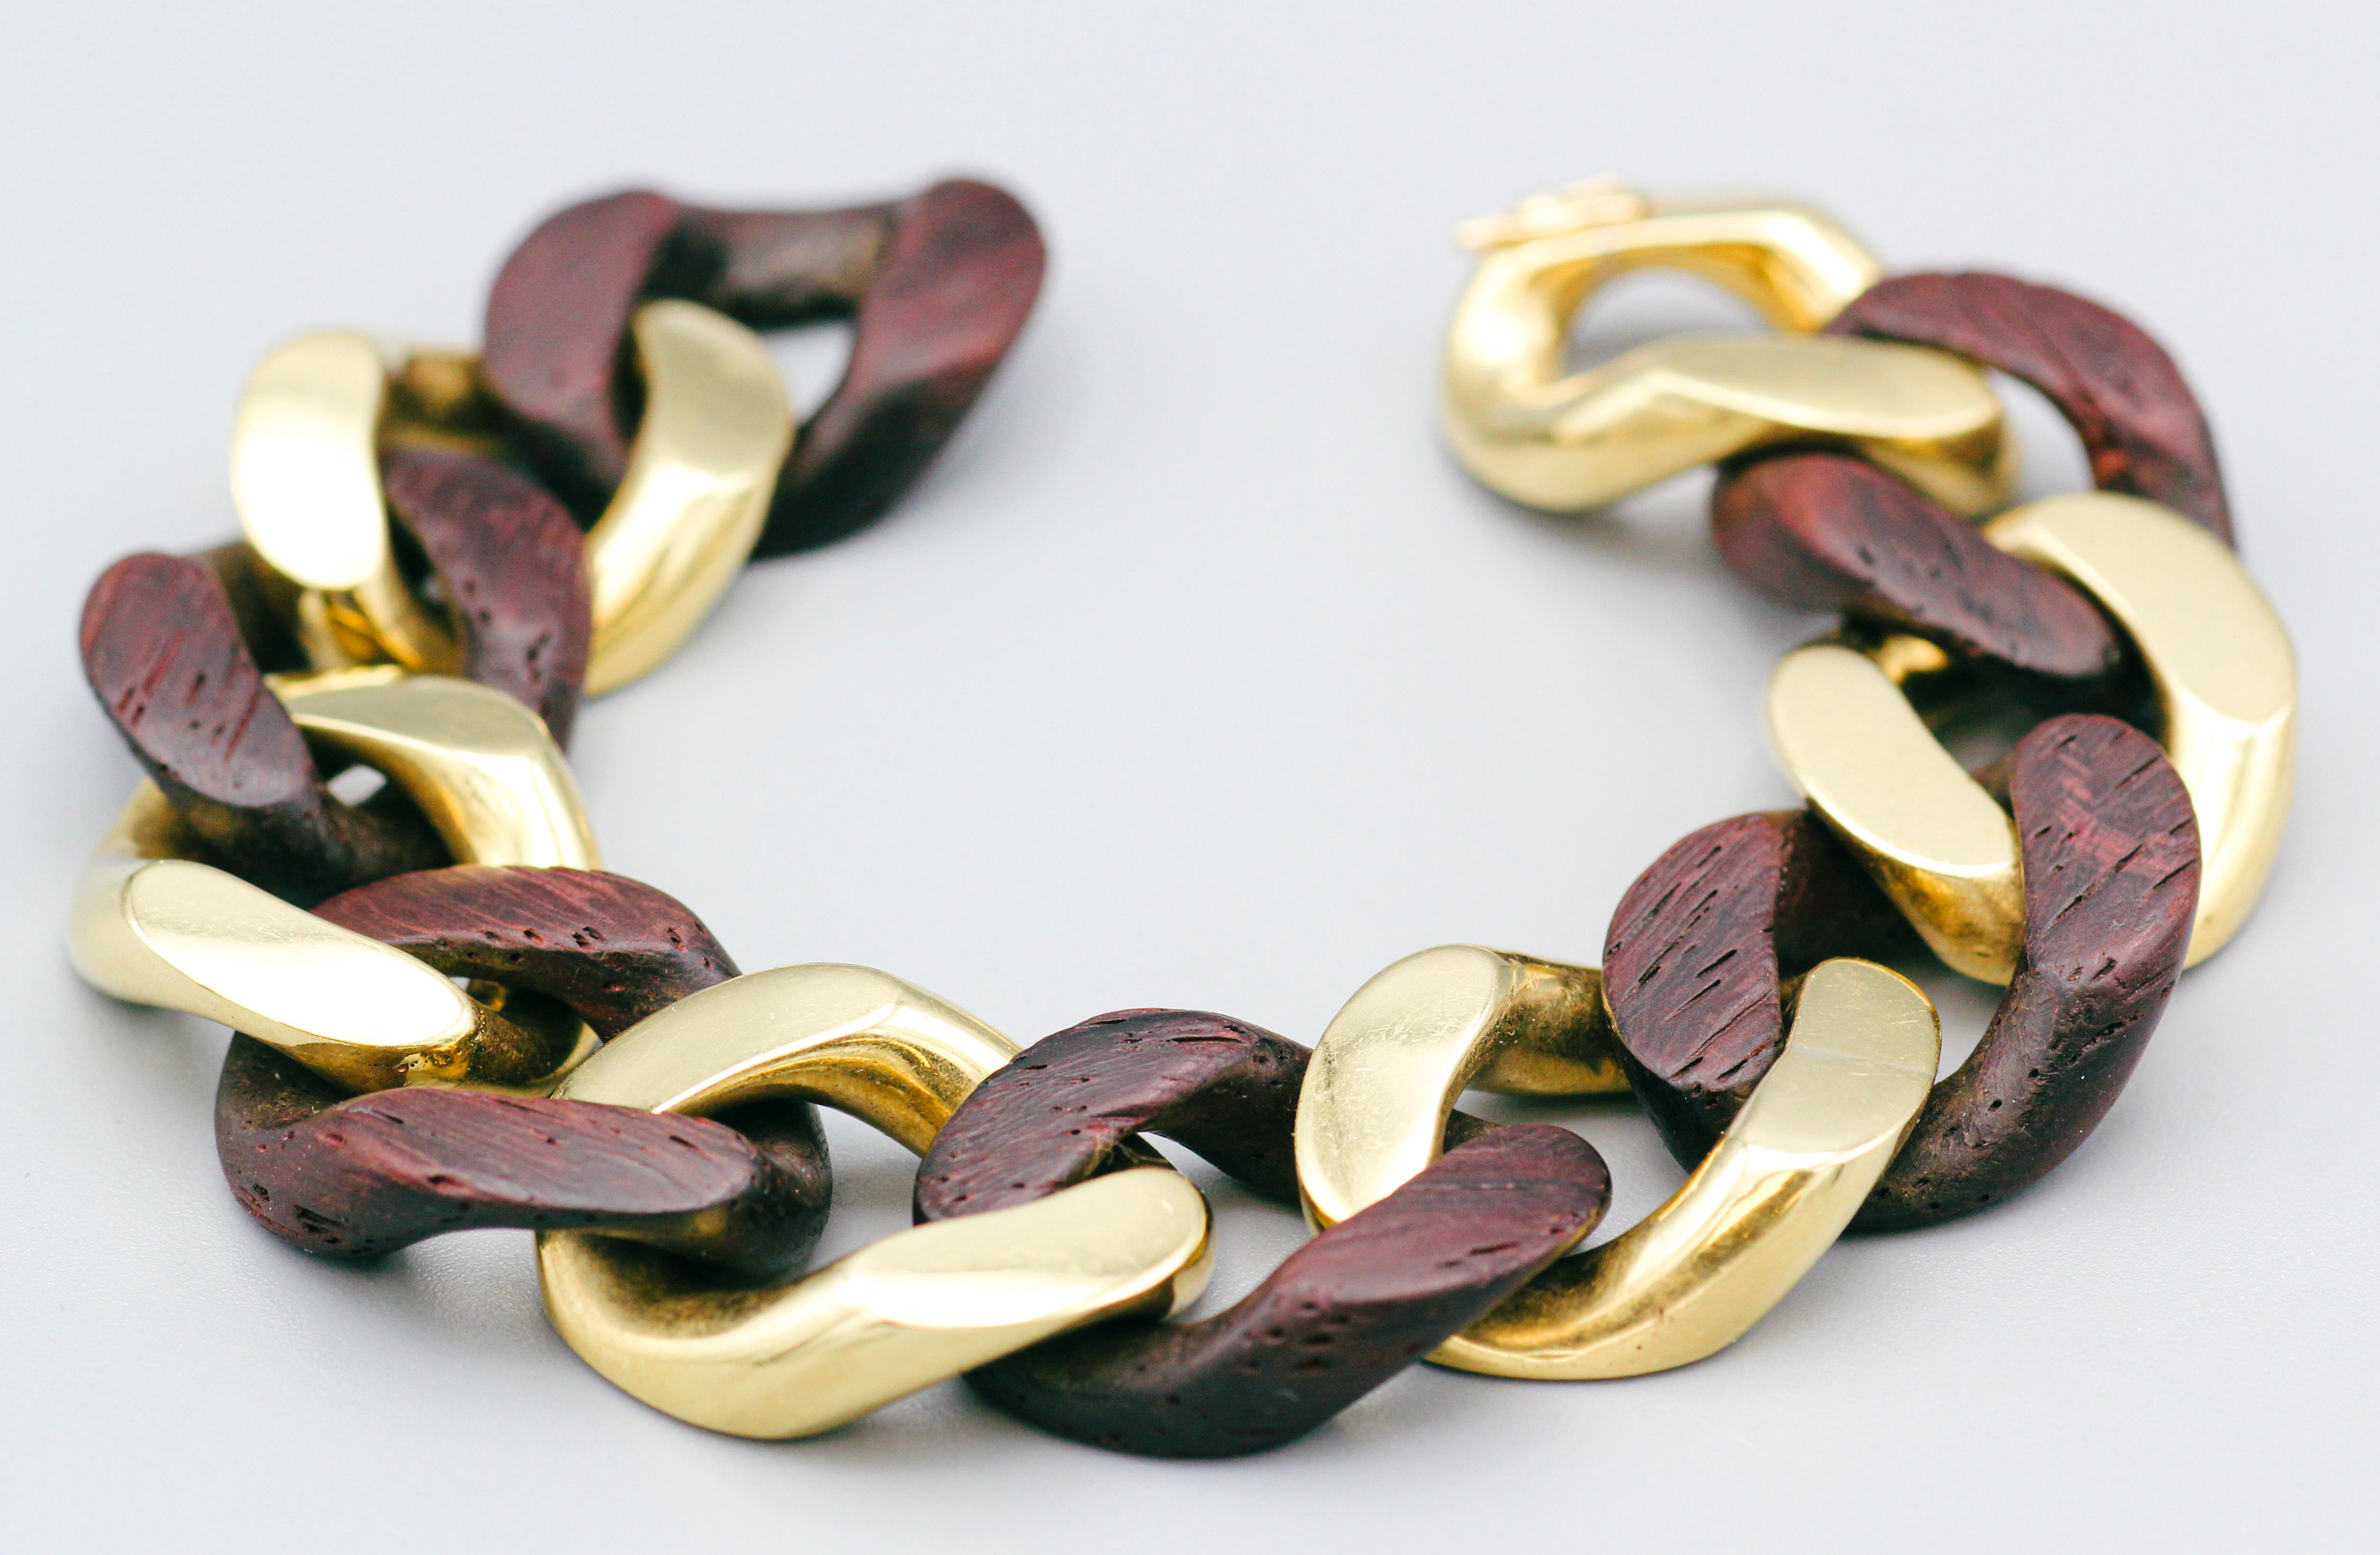 Remontez le temps avec ce bracelet iconique à maillons en bois et en or 18 carats de Bulgari, datant des années 1960-70.
Cette pièce exquise témoigne de la maîtrise du design et de l'artisanat de Bulgari, alliant la chaleur du bois naturel à